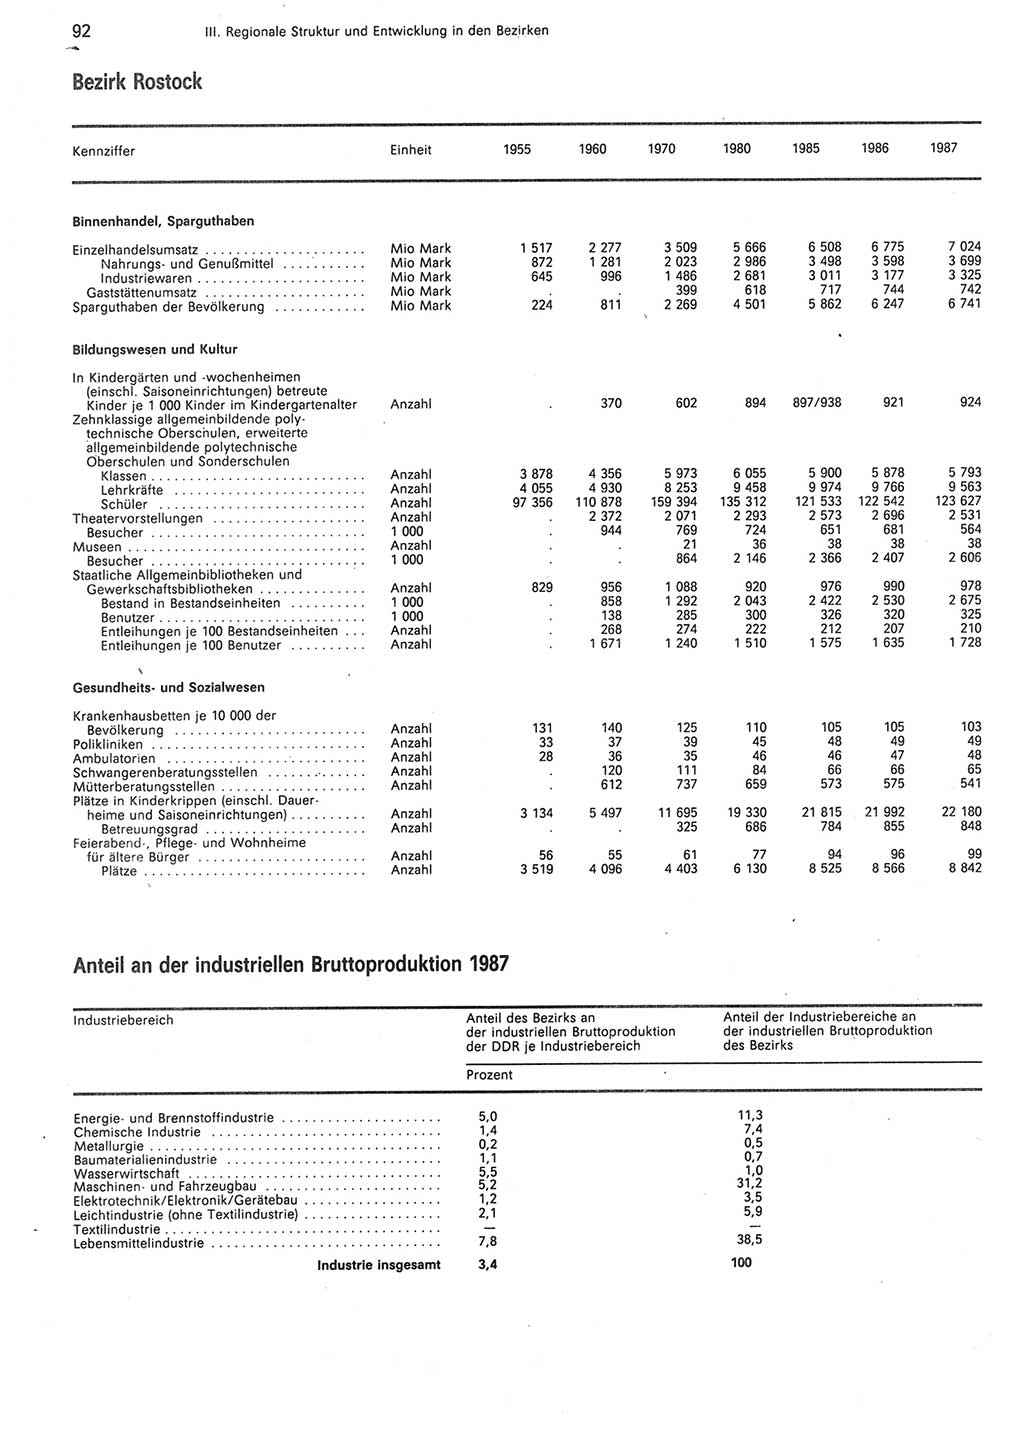 Statistisches Jahrbuch der Deutschen Demokratischen Republik (DDR) 1988, Seite 92 (Stat. Jb. DDR 1988, S. 92)